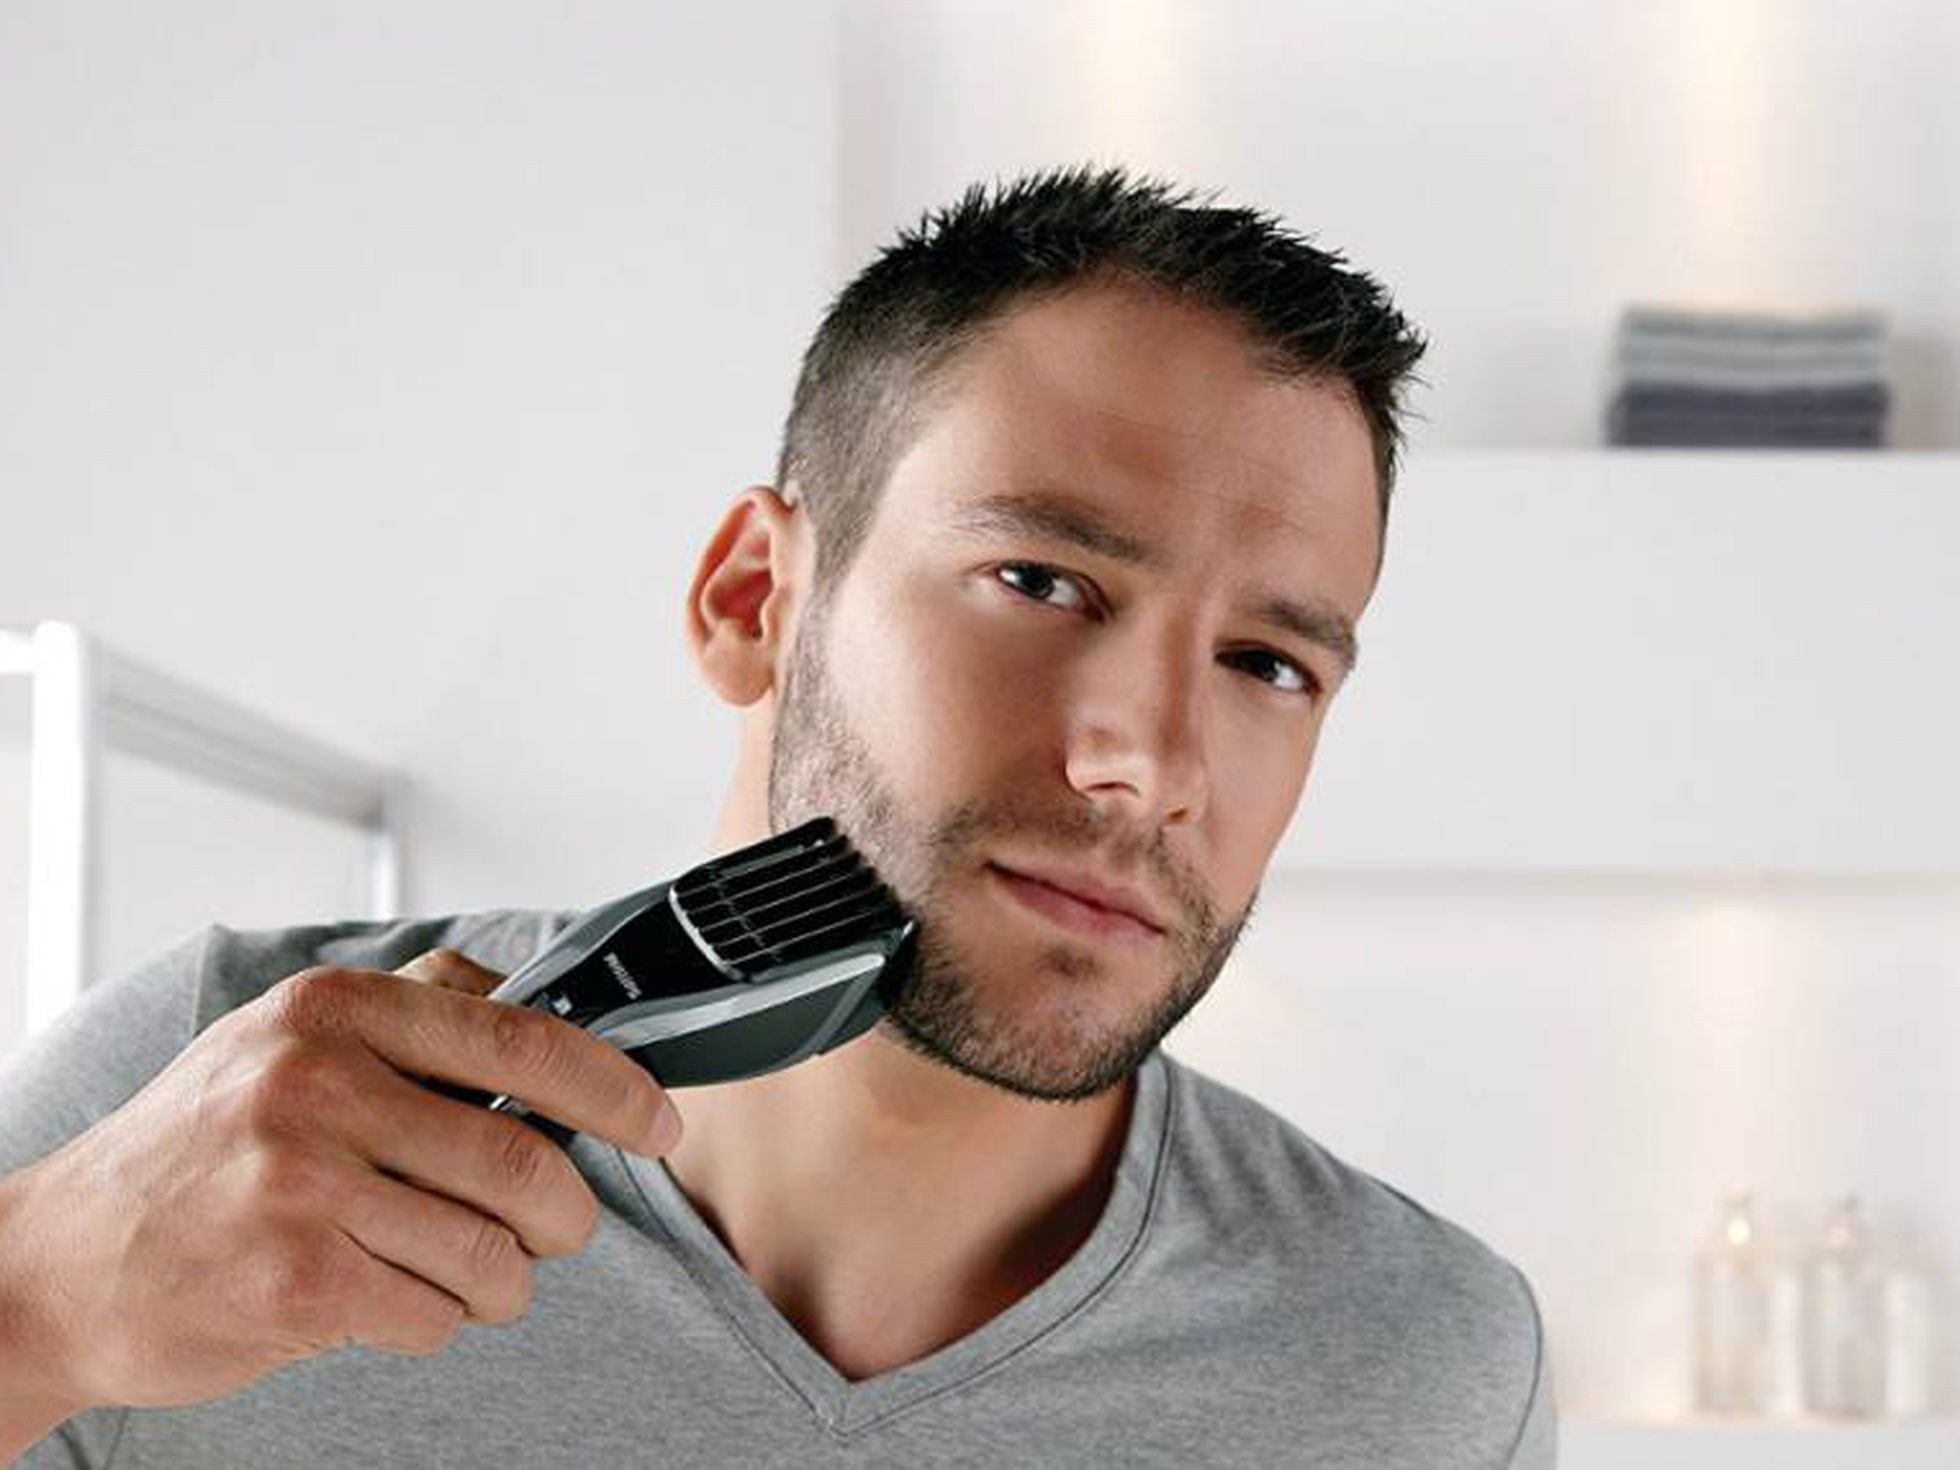 4in1 Electrica Maquina De Afeitar Hombre Afeitadora Rasuradora Barba  Afeitadora